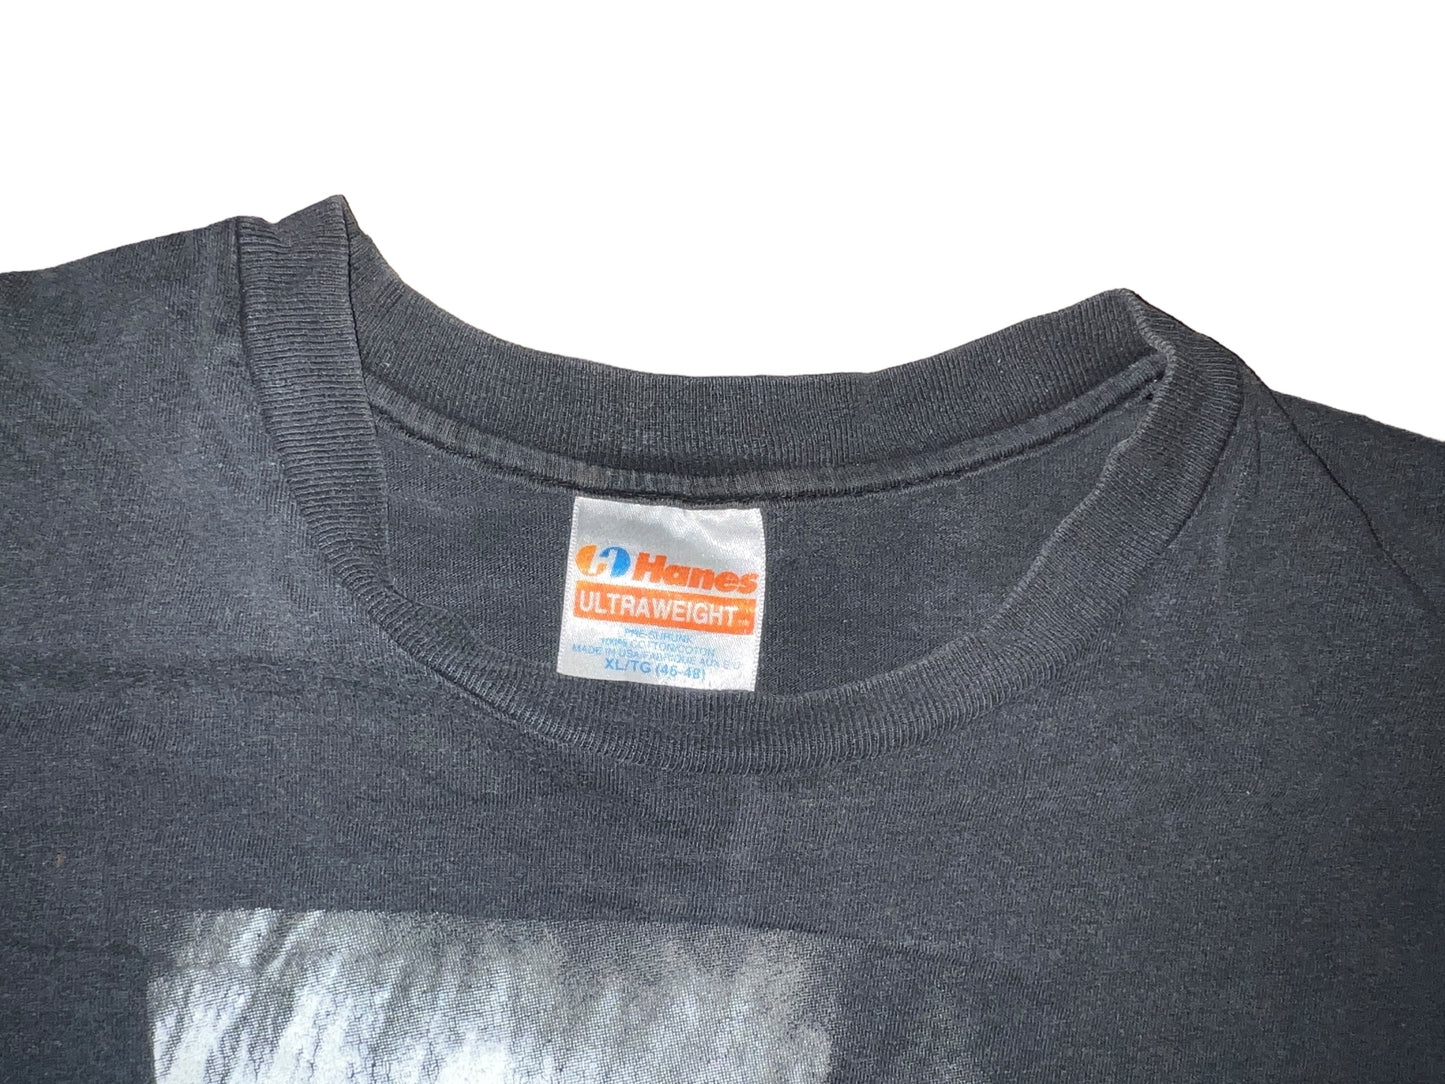 Vintage 1991 Tom Petty T-Shirt